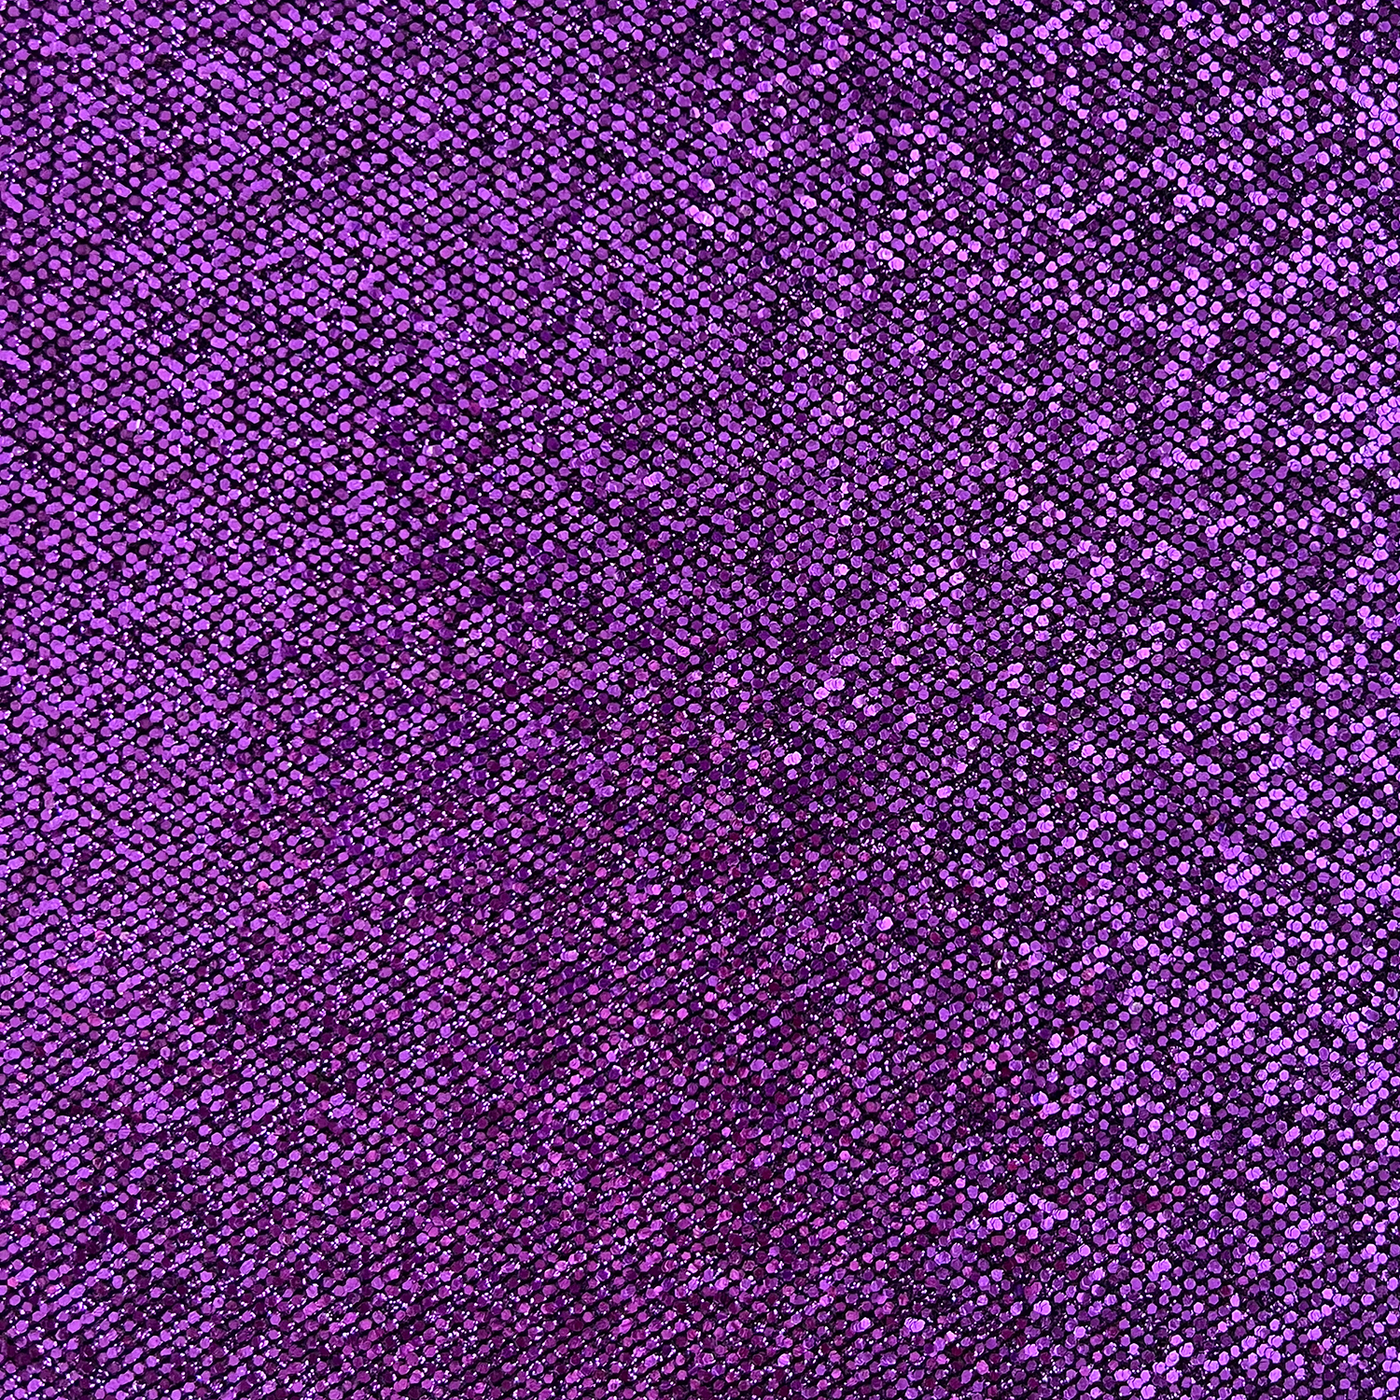 INDIGO Sequin Glitter Cardstock - Purple disco ball glitter 